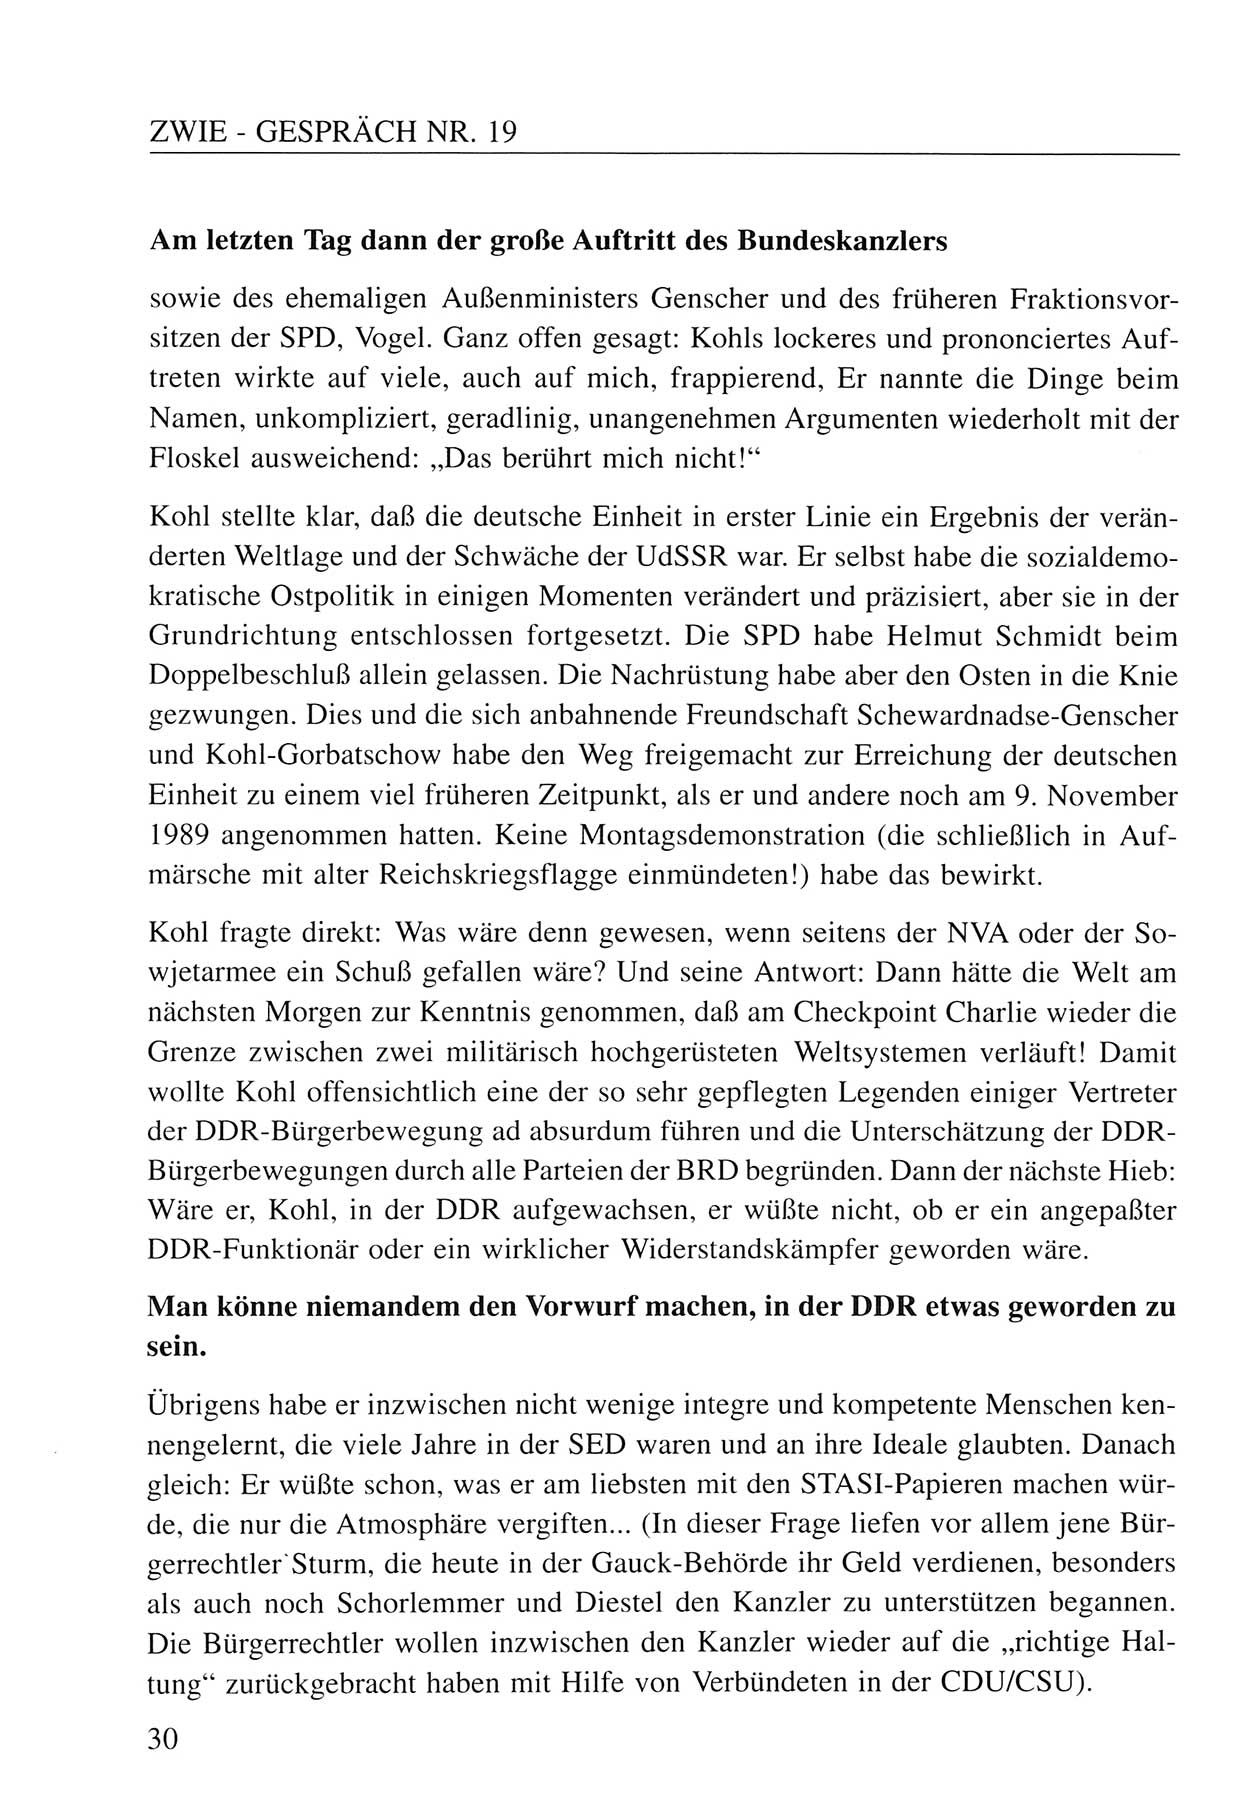 Zwie-Gespräch, Beiträge zum Umgang mit der Staatssicherheits-Vergangenheit [Deutsche Demokratische Republik (DDR)], Ausgabe Nr. 19, Berlin 1994, Seite 30 (Zwie-Gespr. Ausg. 19 1994, S. 30)